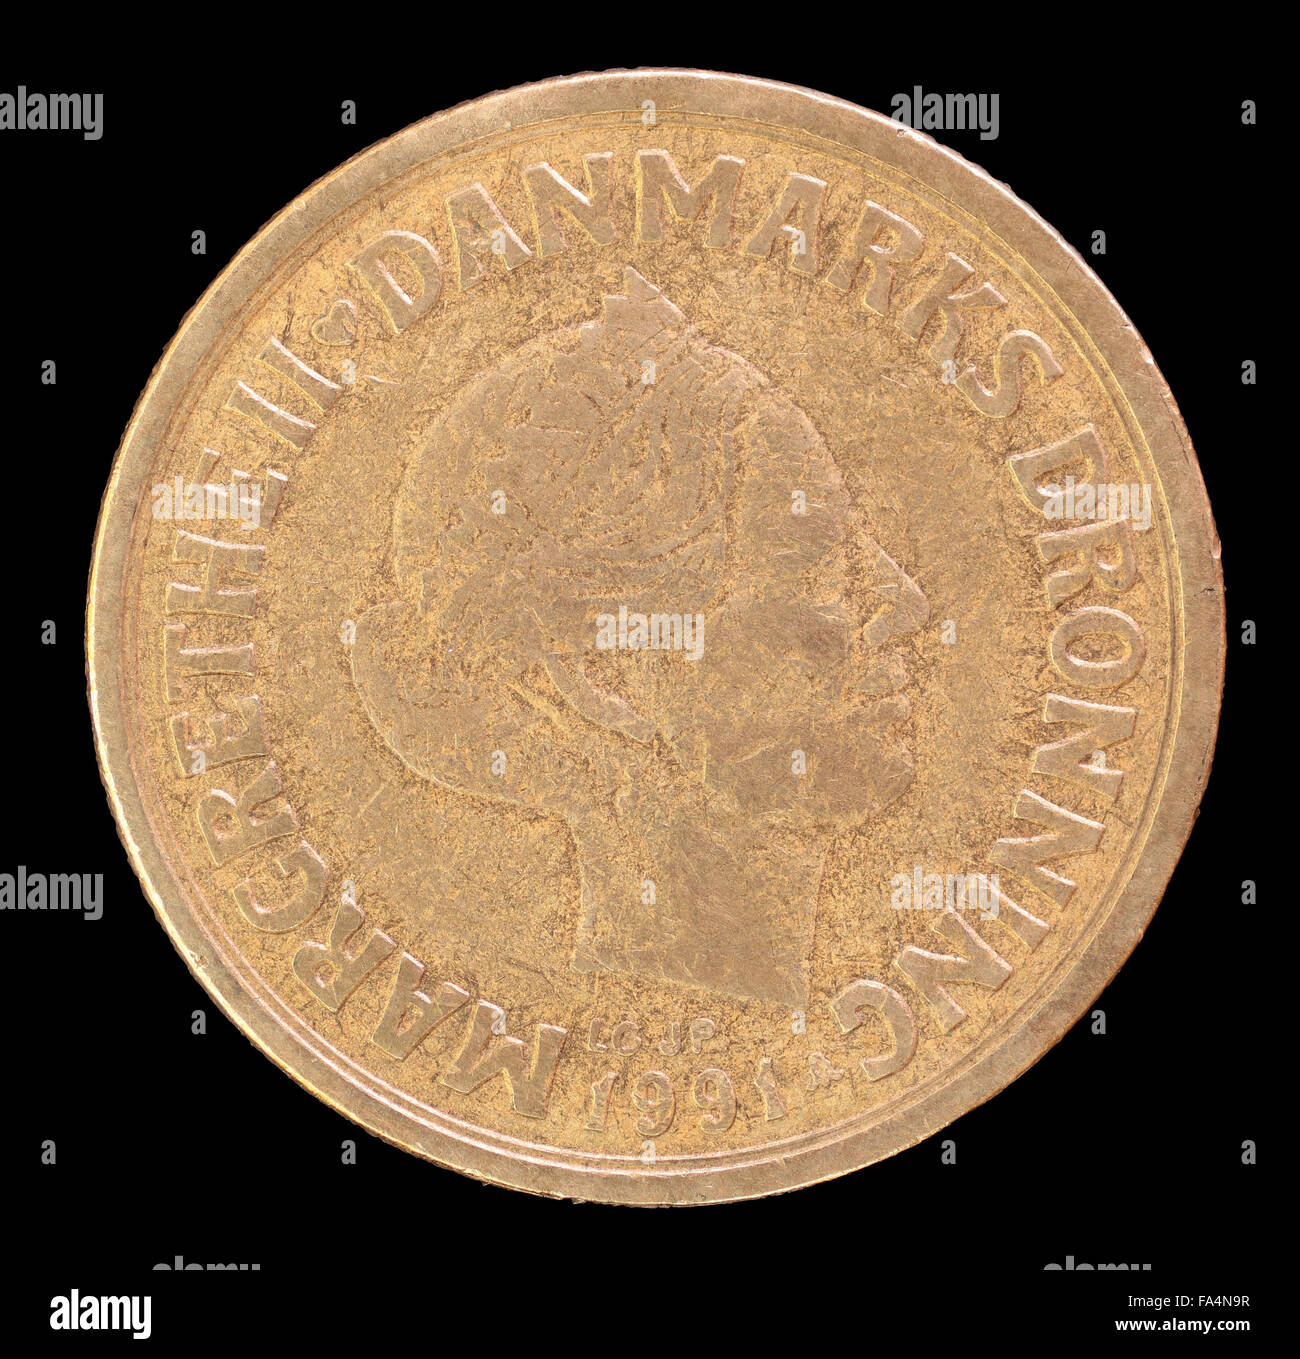 La cara de la cabeza 20 krone, moneda emitida por Dinamarca en 1991, mostrando un retrato de la reina Margrethe II. Imagen aislada en negro B Foto de stock